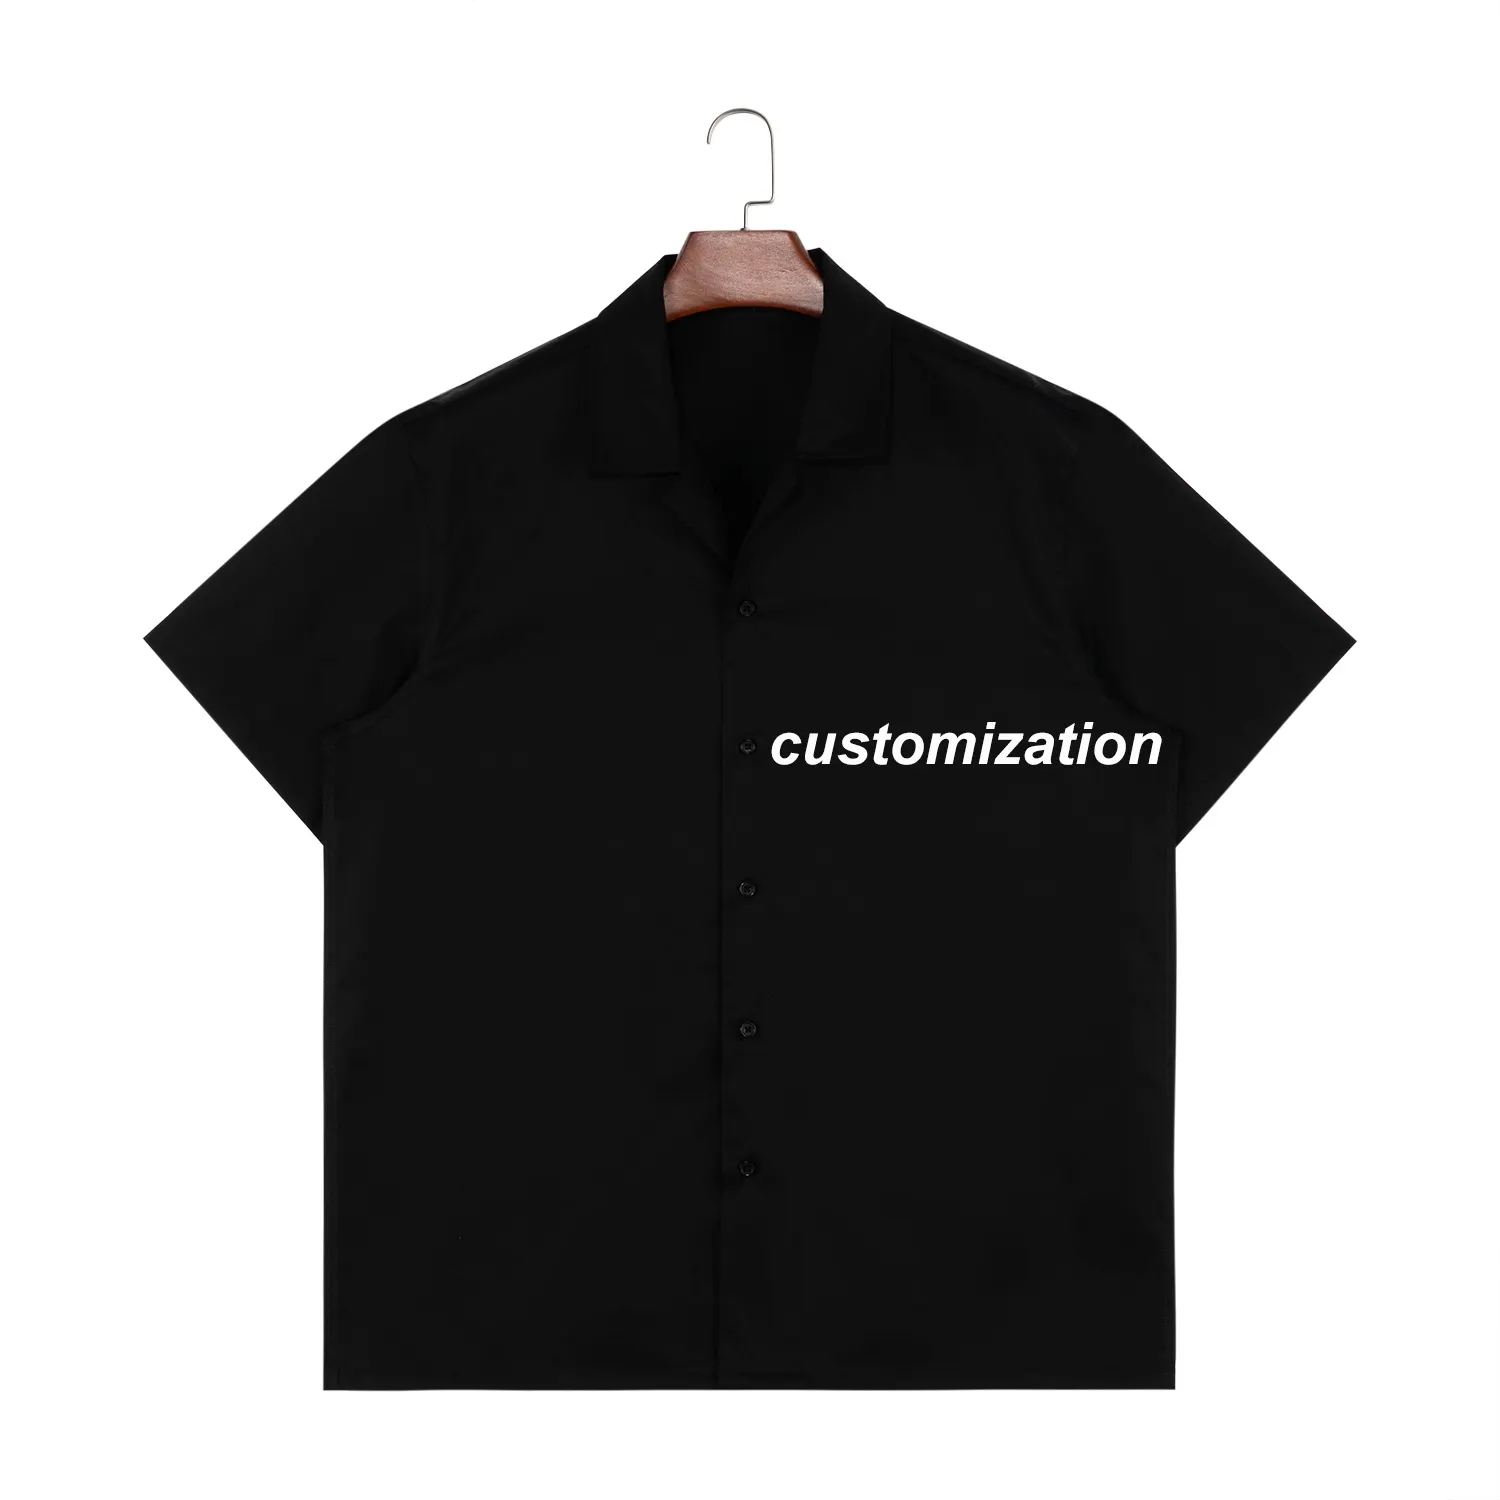 निर्माता समर कार्गो कैंप शर्ट कैजुअल वर्क टी शर्ट कस्टम हवाईयन शॉर्ट स्लीव प्रिंटिंग बटन अप शर्ट